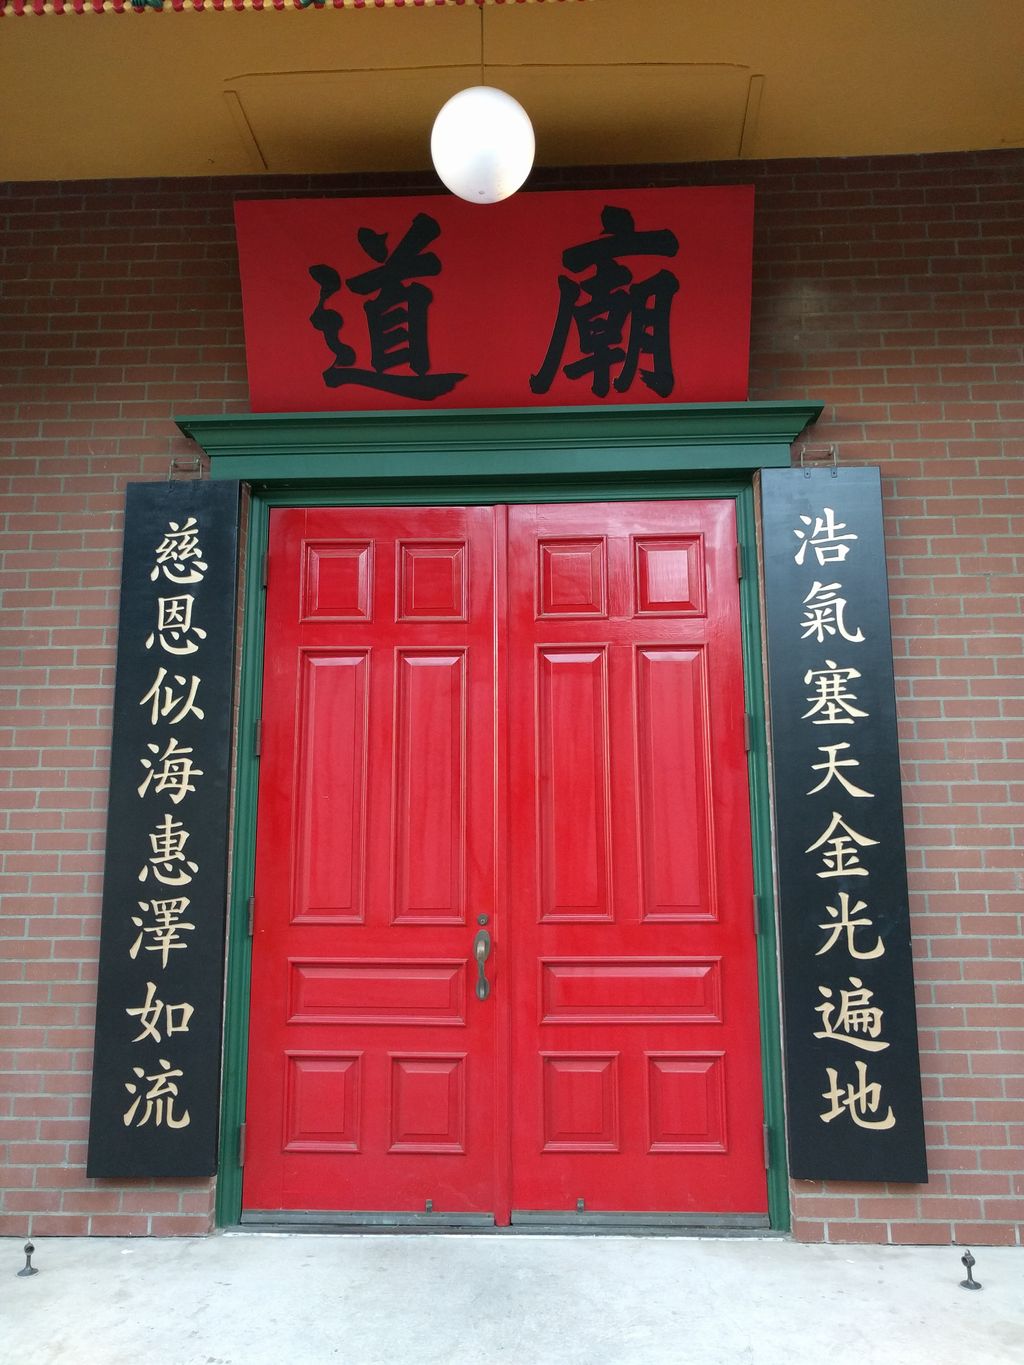 Chinese American Historical Museum at the Ng Shing Gung